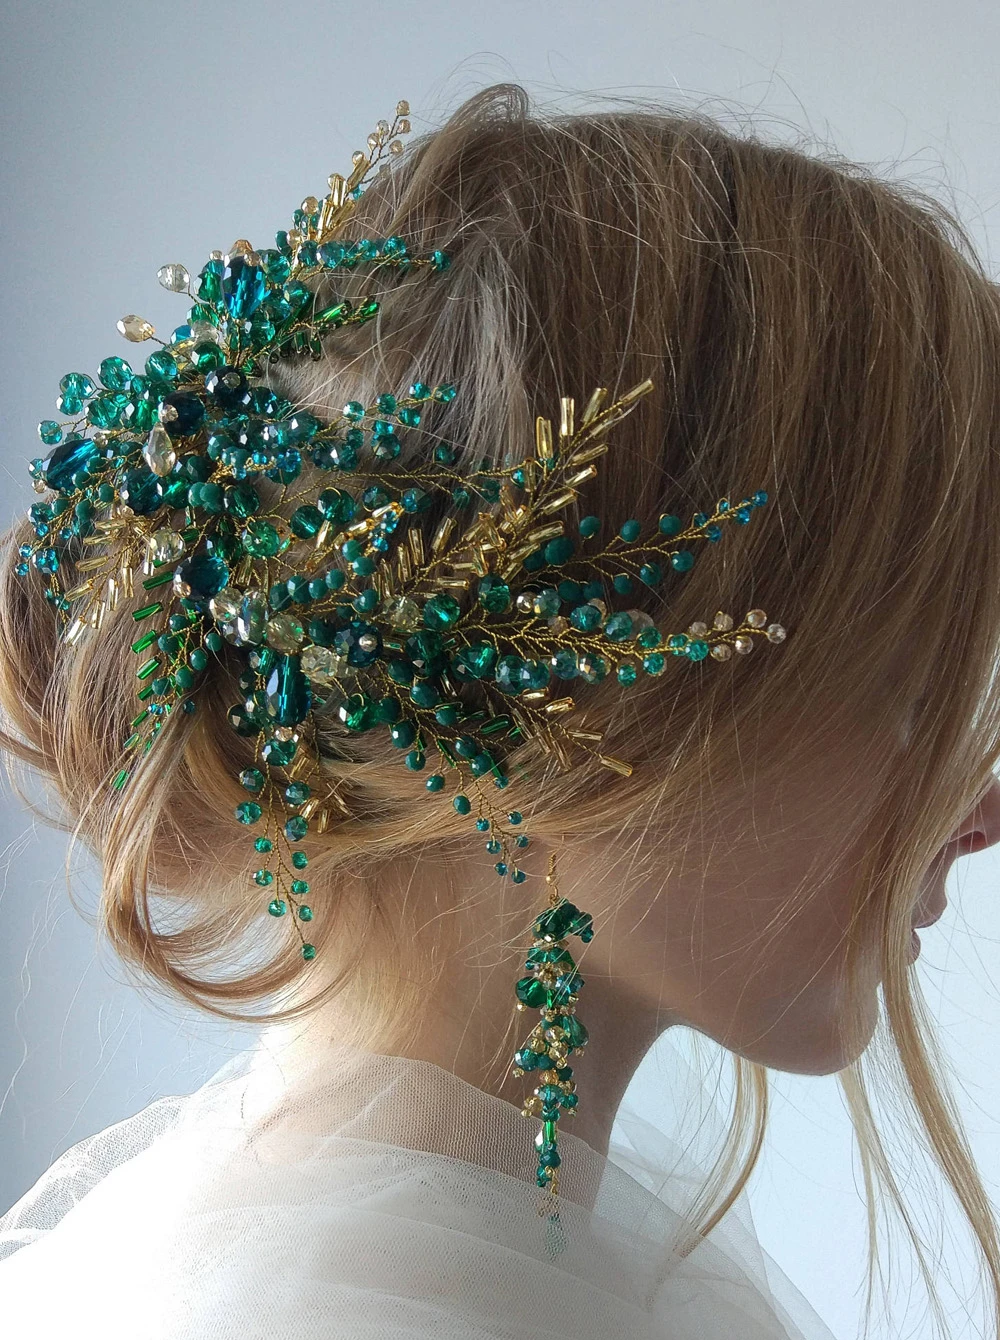 Bohe Green Hair Vine Hair Piece Crystal Headdress Bridal Gold Hair Accessories Wedding Hair Accessories Bride Headband for Women